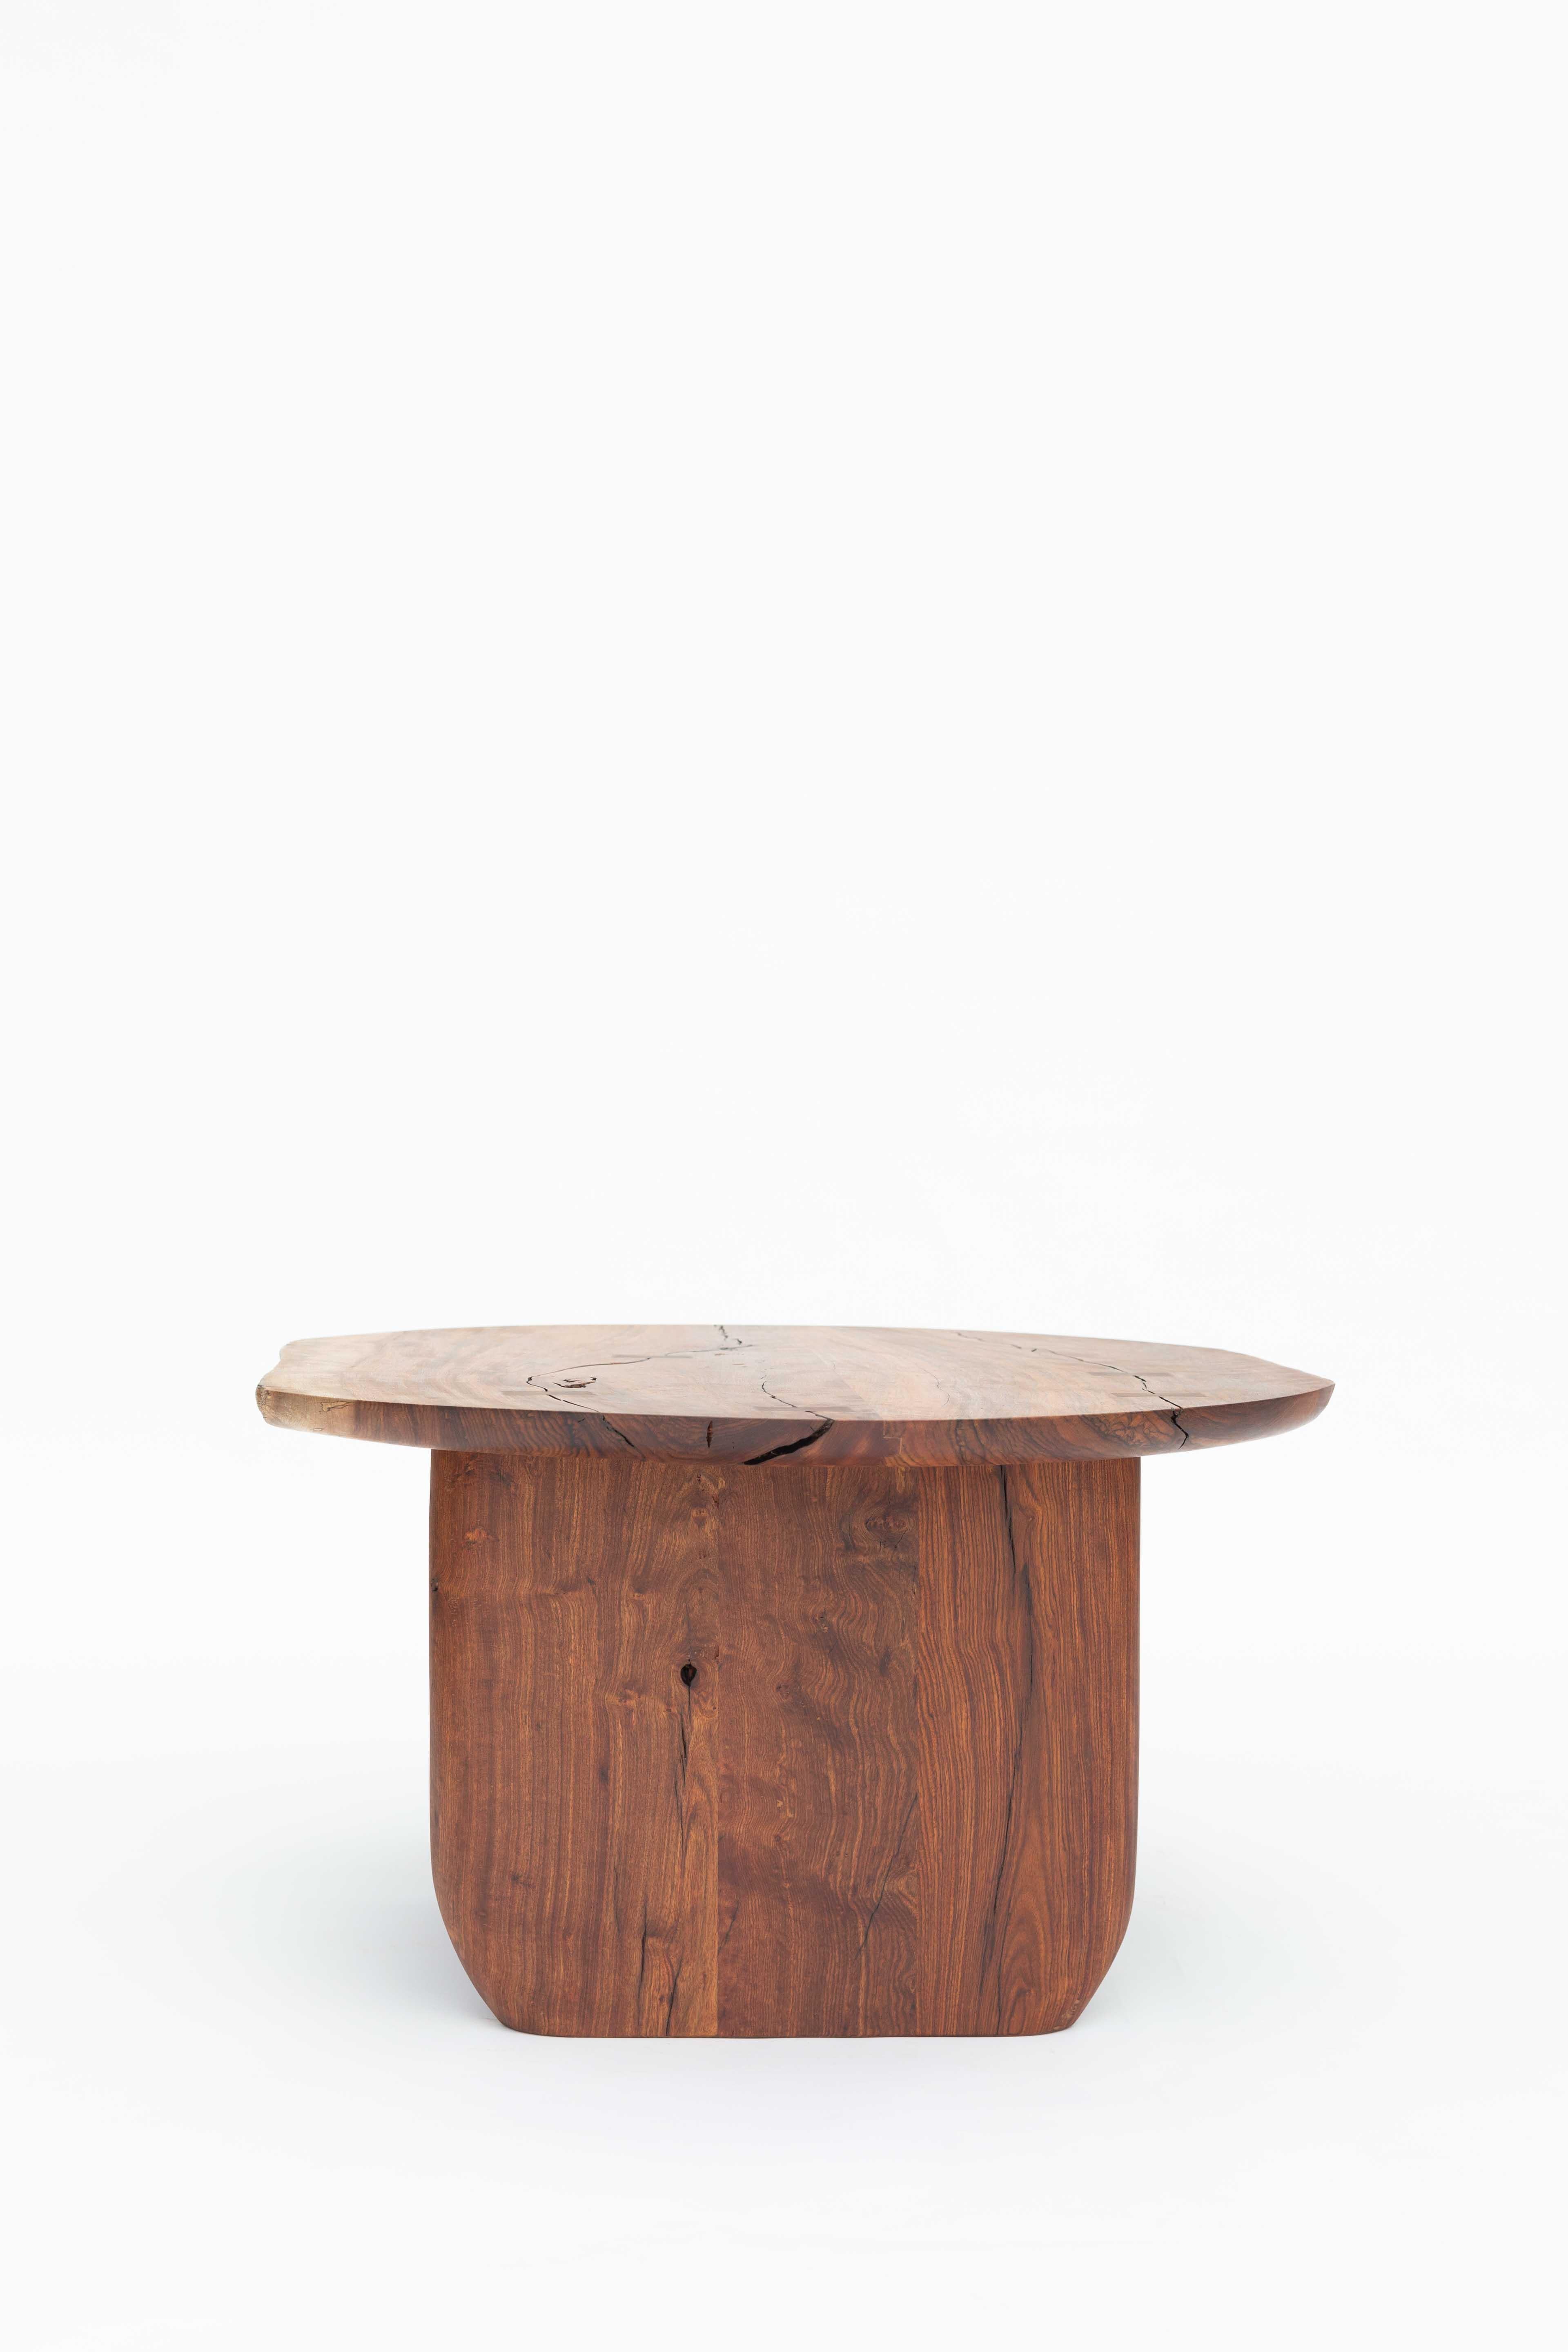 Cette table basse est élaborée à partir de remarquables planches de bois provenant de l'arbre Chechen - Black Poisonwood, l'un des bois durs les plus appréciés du sud du Mexique. Il se caractérise par ses beaux dessins naturels avec des tons de